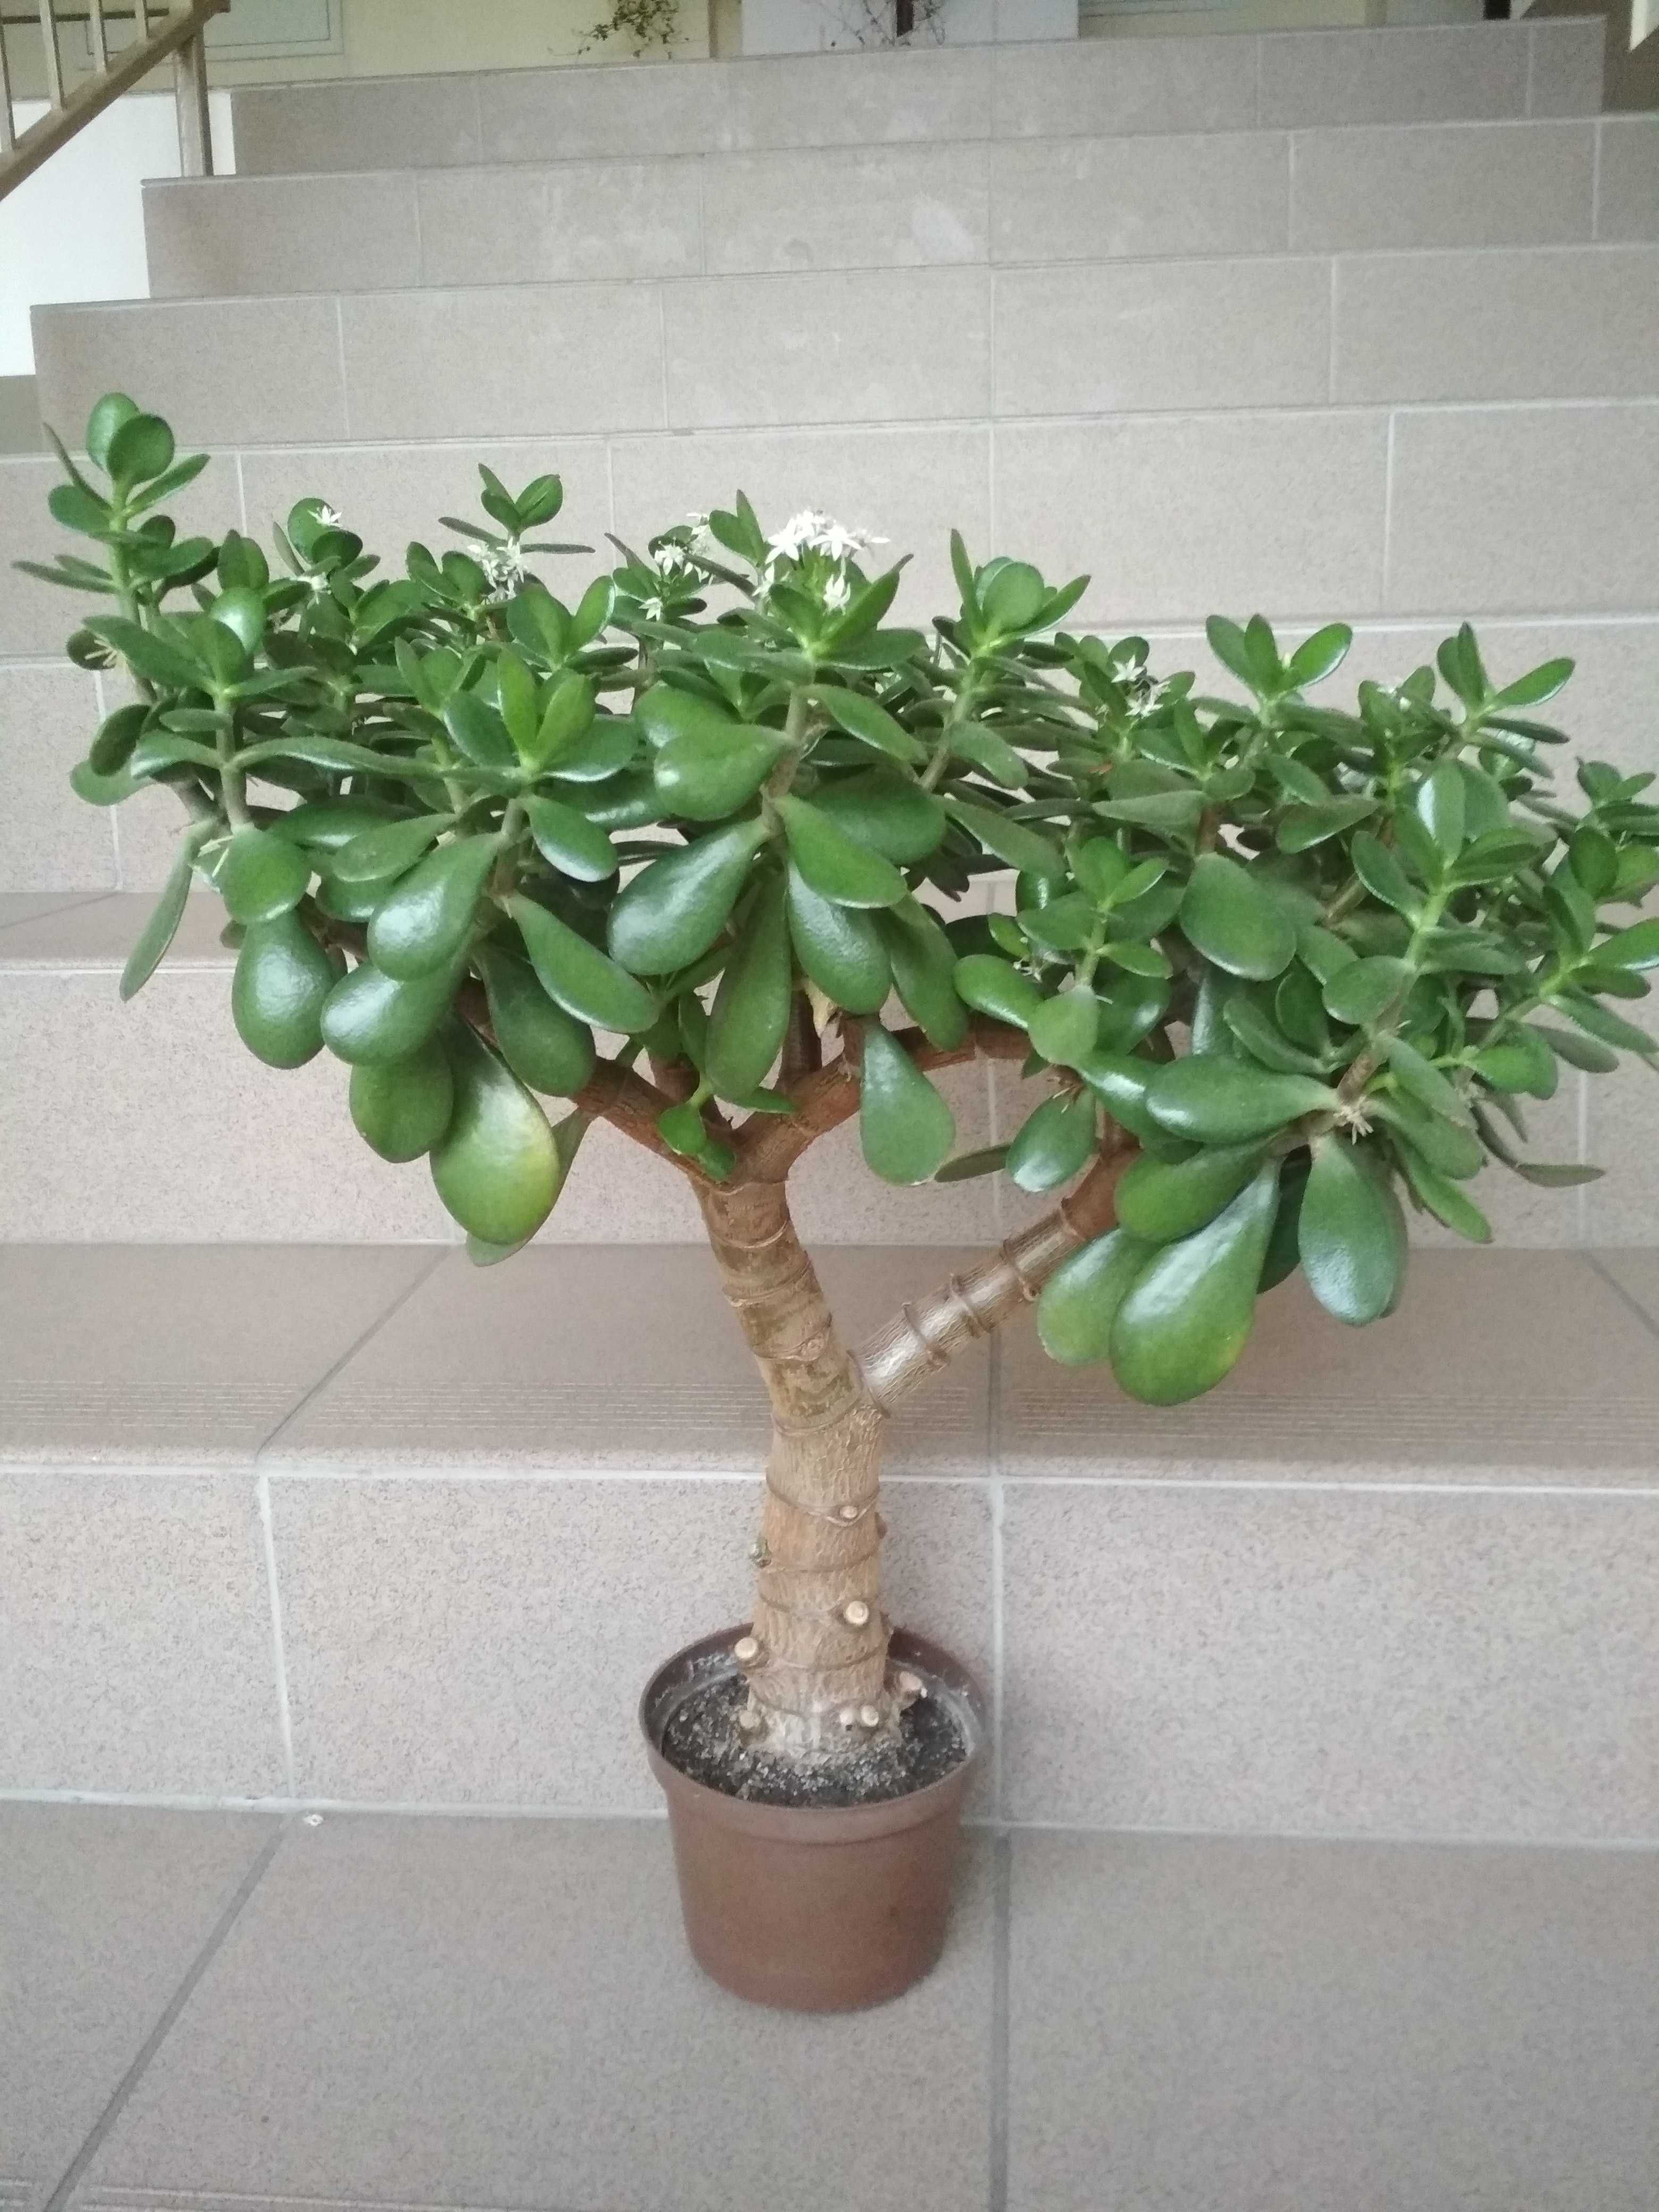 Grubosz bonsai drzewko duża roślina